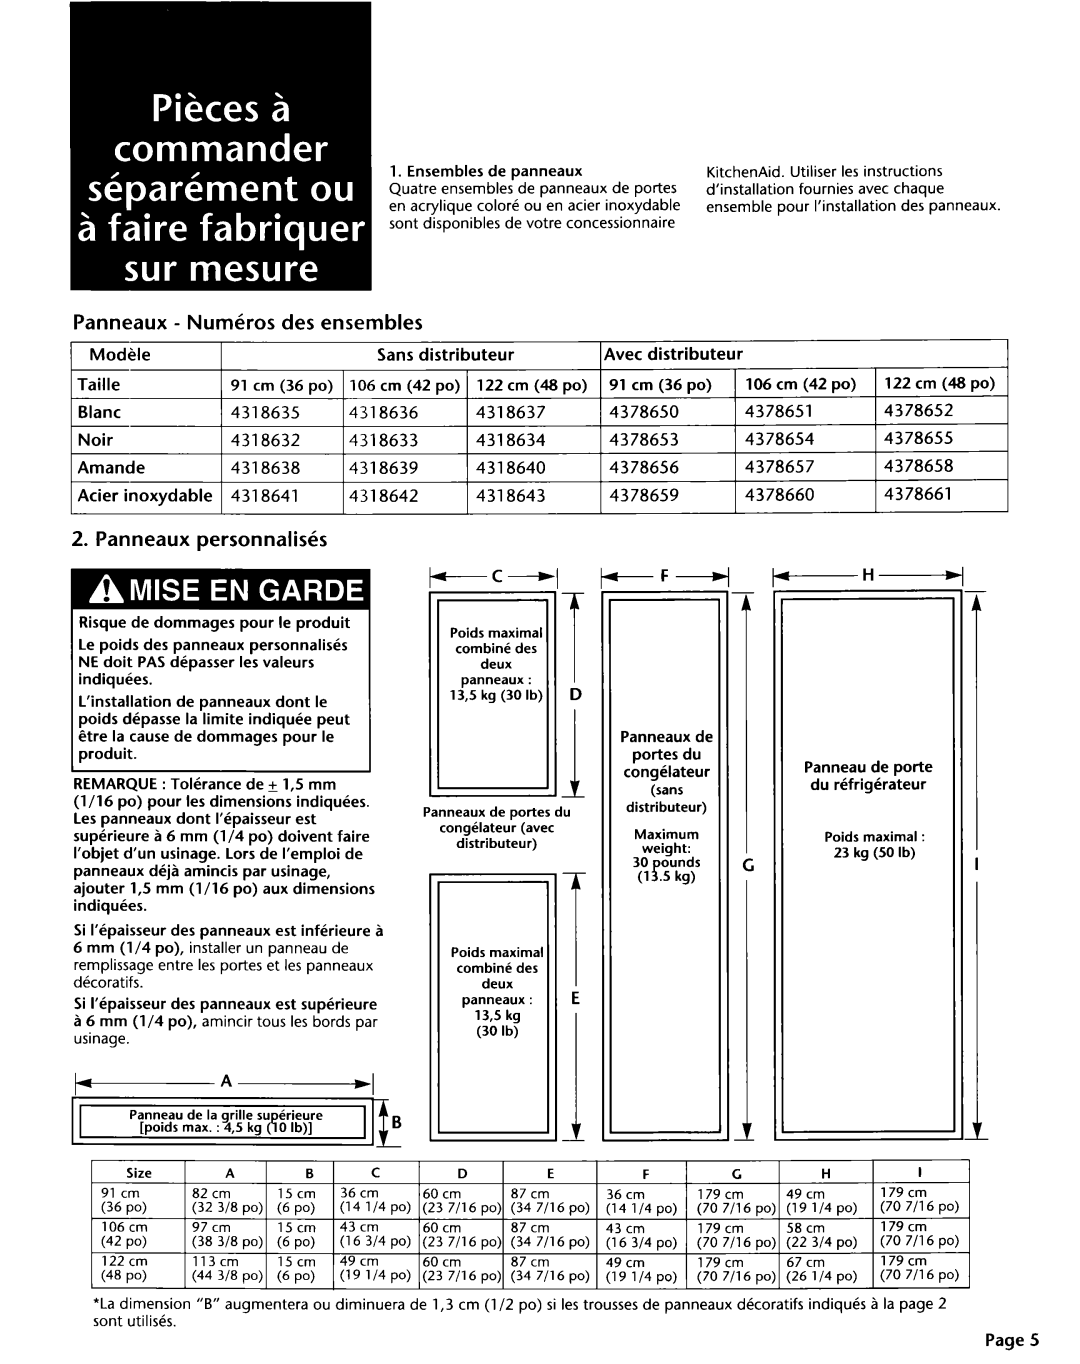 KitchenAid 2004022 installation instructions Panneaux - Numkros des ensembles, Panneaux personnalisks 